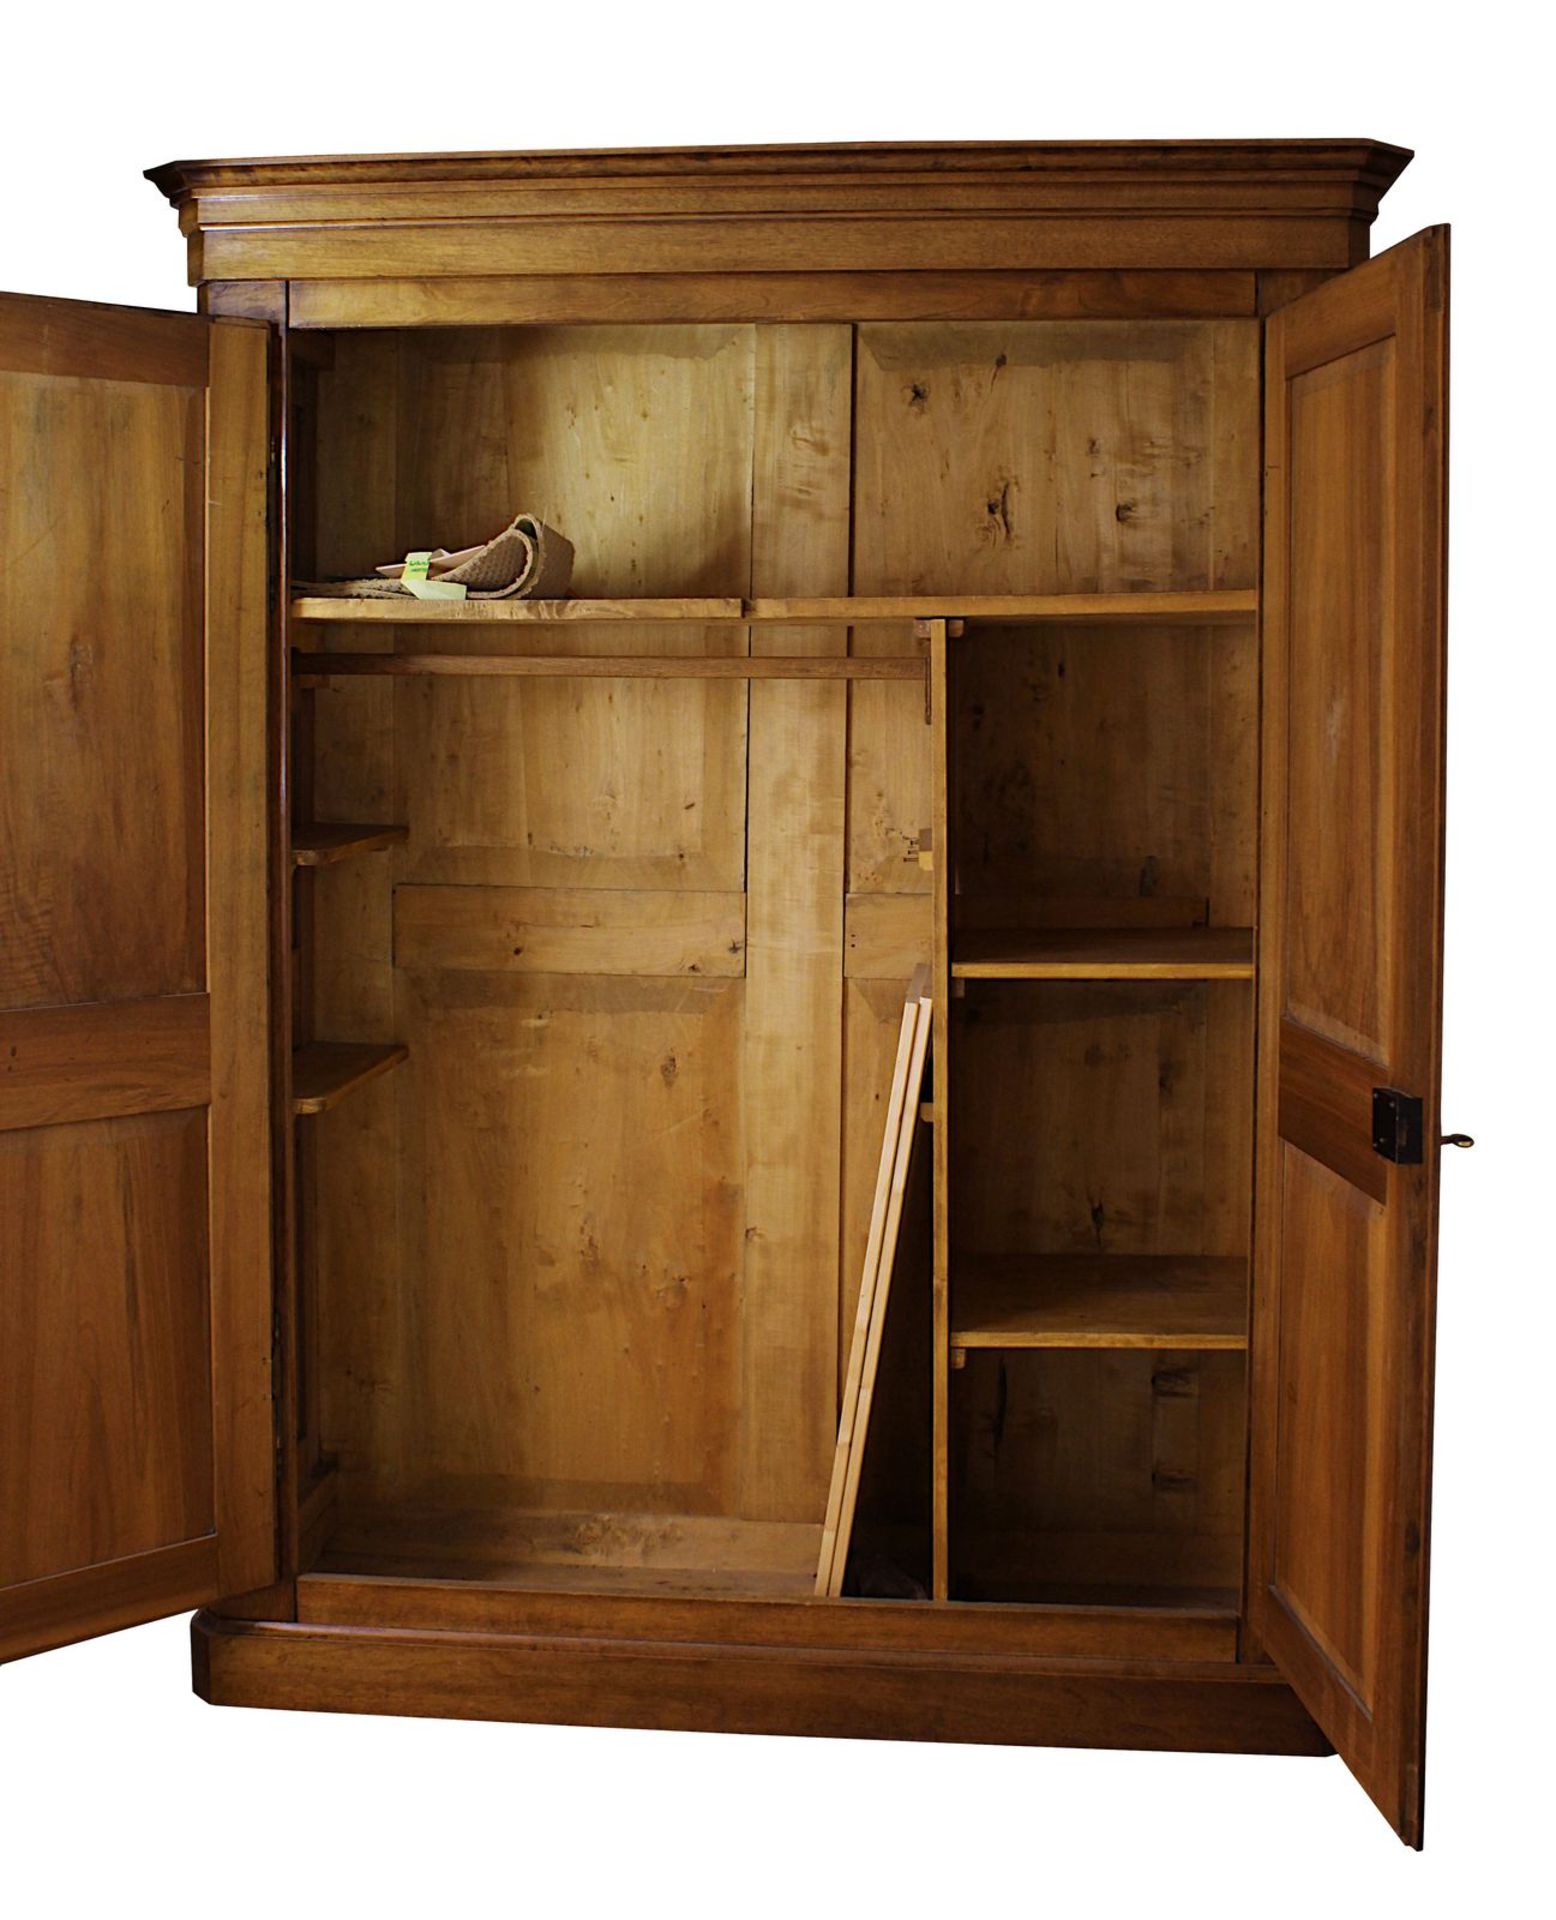 Nussbaumschrank, Mitte 19. Jh., zweitürig, kassettierte Türen und Seiten, mit geraden Füllungen, - Image 2 of 2